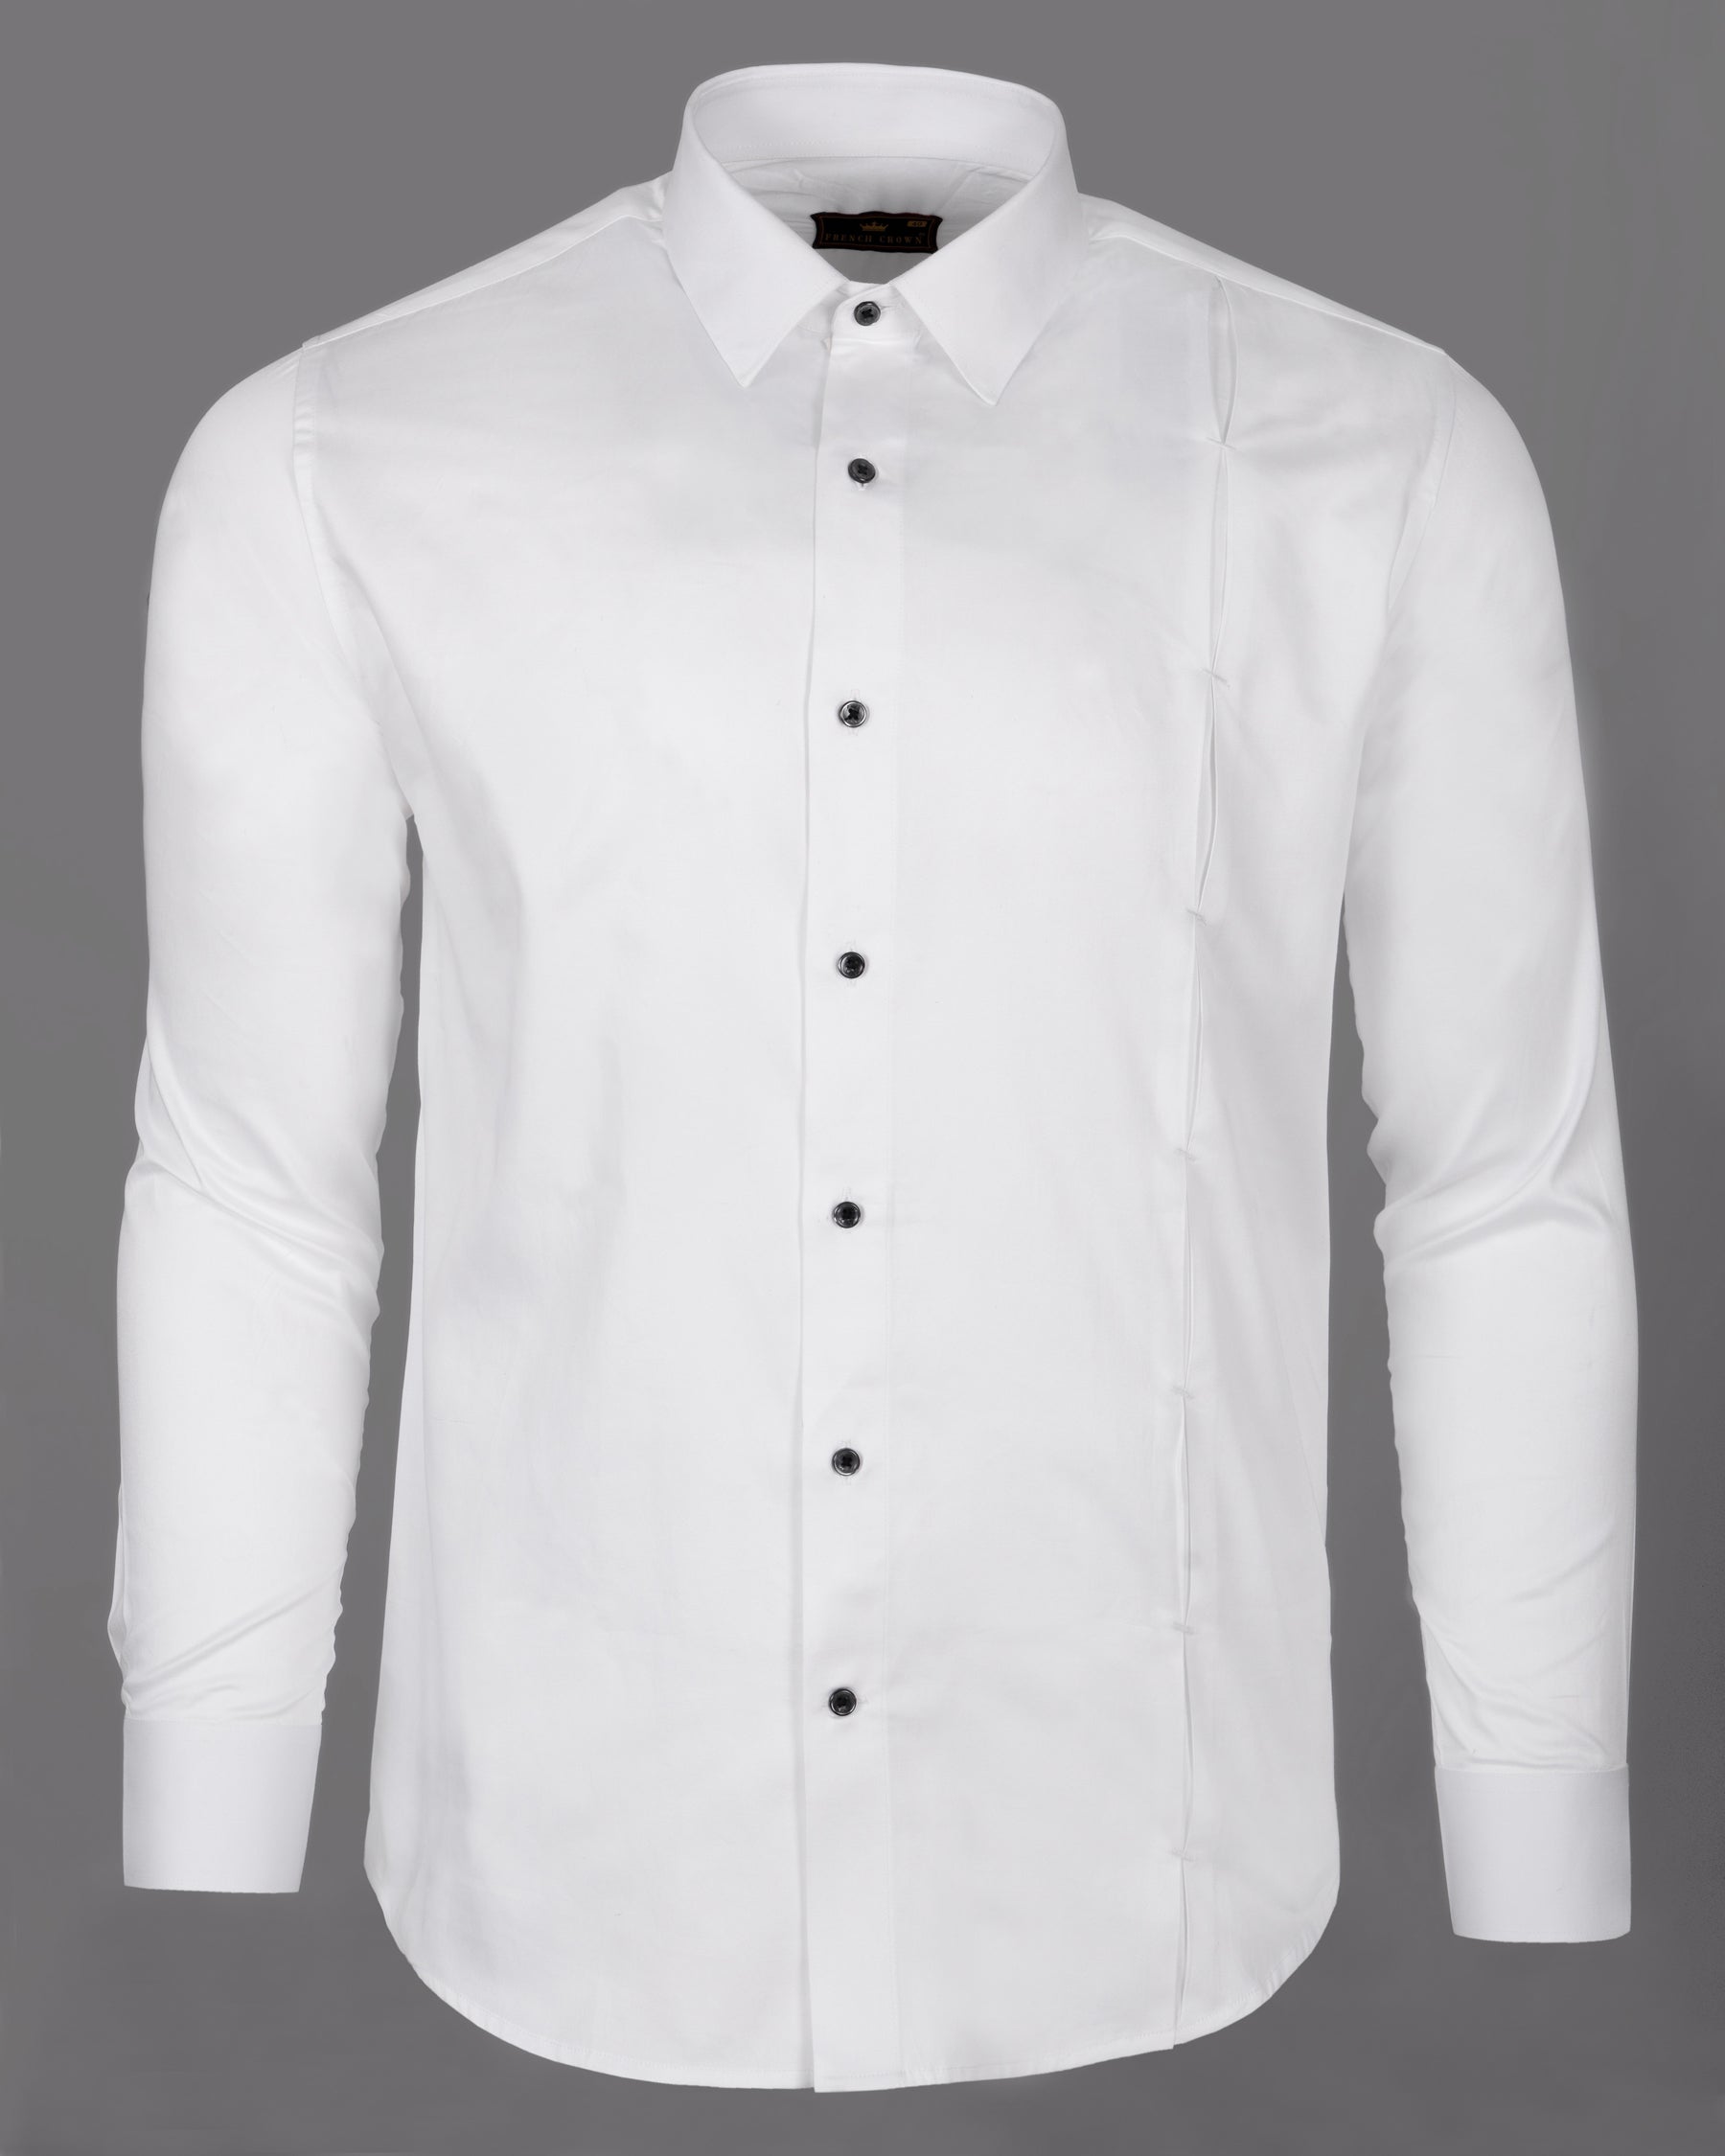 Bright White Subtle Sheen patterned Super Soft Premium Cotton Shirt 5026-BLK-P60-38, 5026-BLK-P60-H-38, 5026-BLK-P60-39, 5026-BLK-P60-H-39, 5026-BLK-P60-40, 5026-BLK-P60-H-40, 5026-BLK-P60-42, 5026-BLK-P60-H-42, 5026-BLK-P60-44, 5026-BLK-P60-H-44, 5026-BLK-P60-46, 5026-BLK-P60-H-46, 5026-BLK-P60-48, 5026-BLK-P60-H-48, 5026-BLK-P60-50, 5026-BLK-P60-H-50, 5026-BLK-P60-52, 5026-BLK-P60-H-52